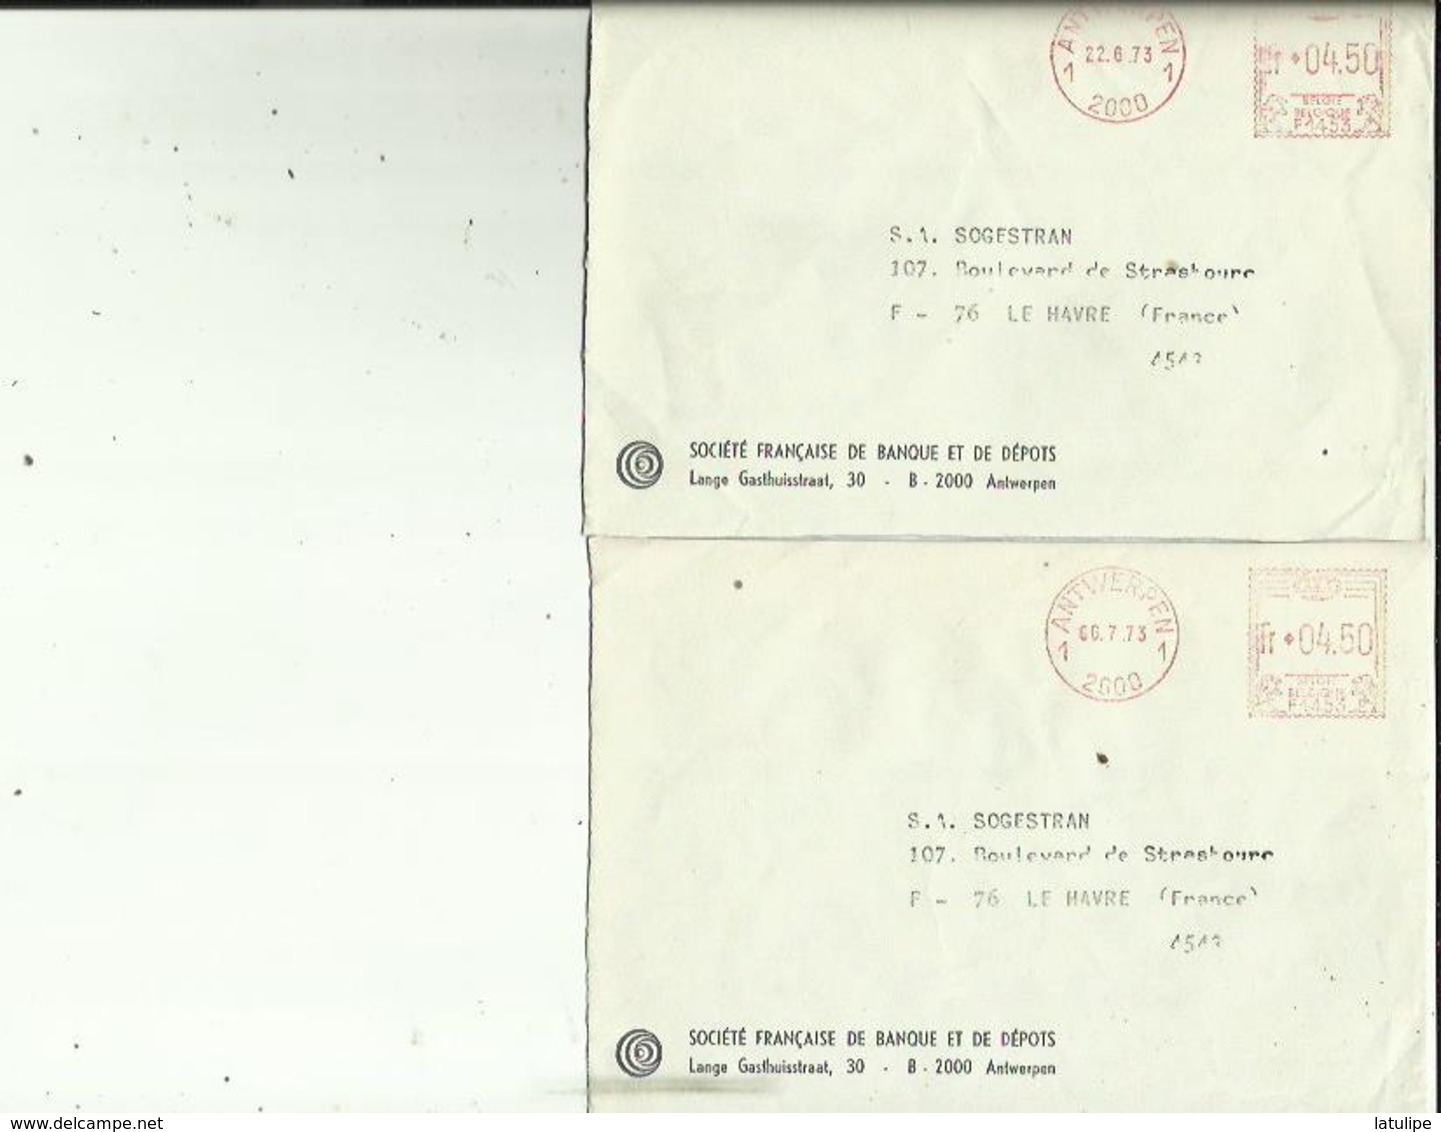 2  Enveloppes De Sté  Française De Depot A ANVERS   Adressé A  S A  SOGESTRAM Au HAVRE 76 Le 22-6 Et 6-7 73 - Banque & Assurance